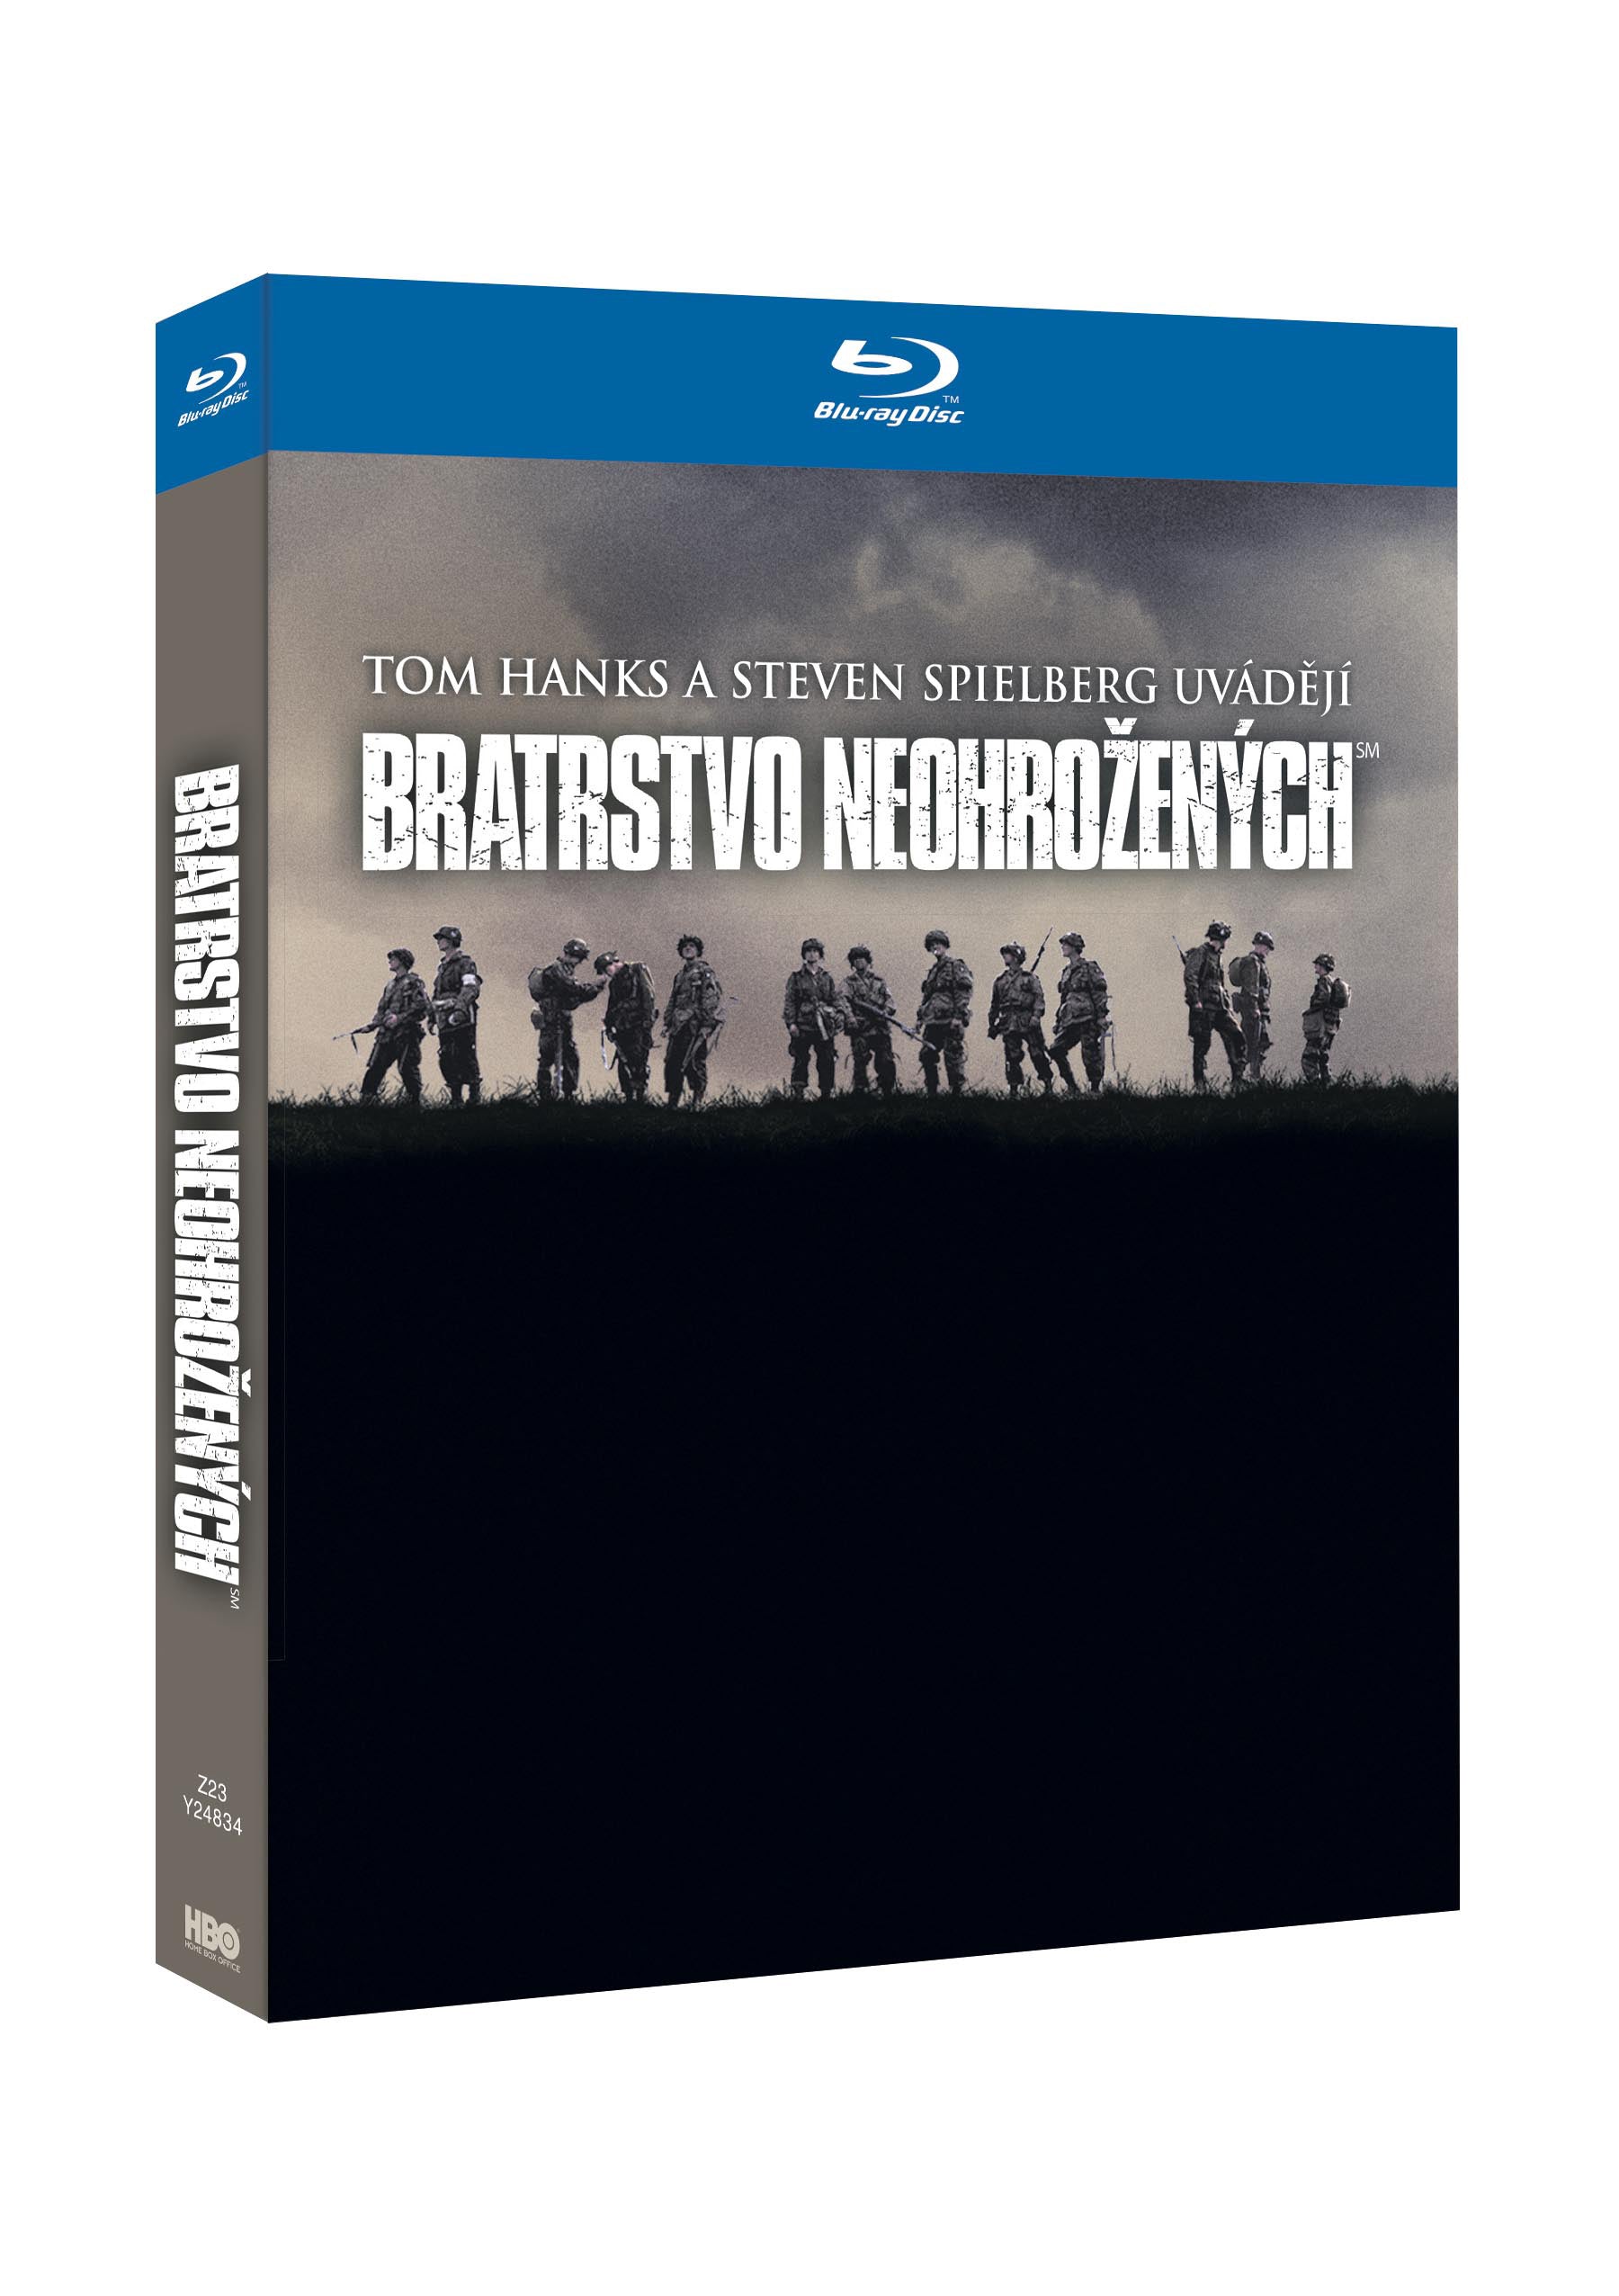 Bratrstvo neohrozenych 6BD (VIVA baleni) / Band of Brothers - Czech version